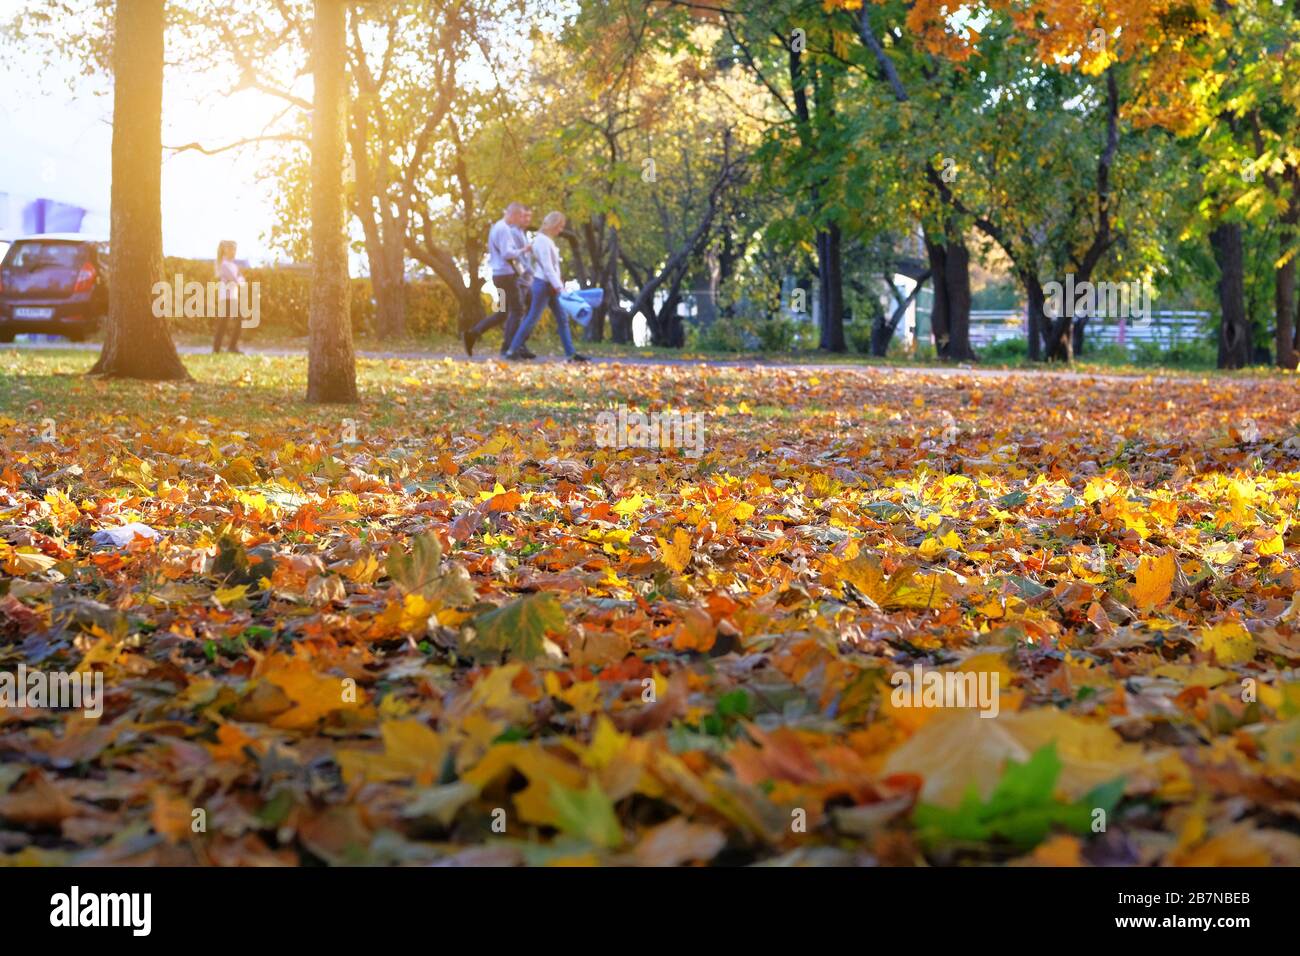 Herbst-Stadtpark-Gasse. Am sonnigen Herbsttag spazieren die Menschen durch den Park. Gelbe Herbstblätter. Sonnig. Stockfoto